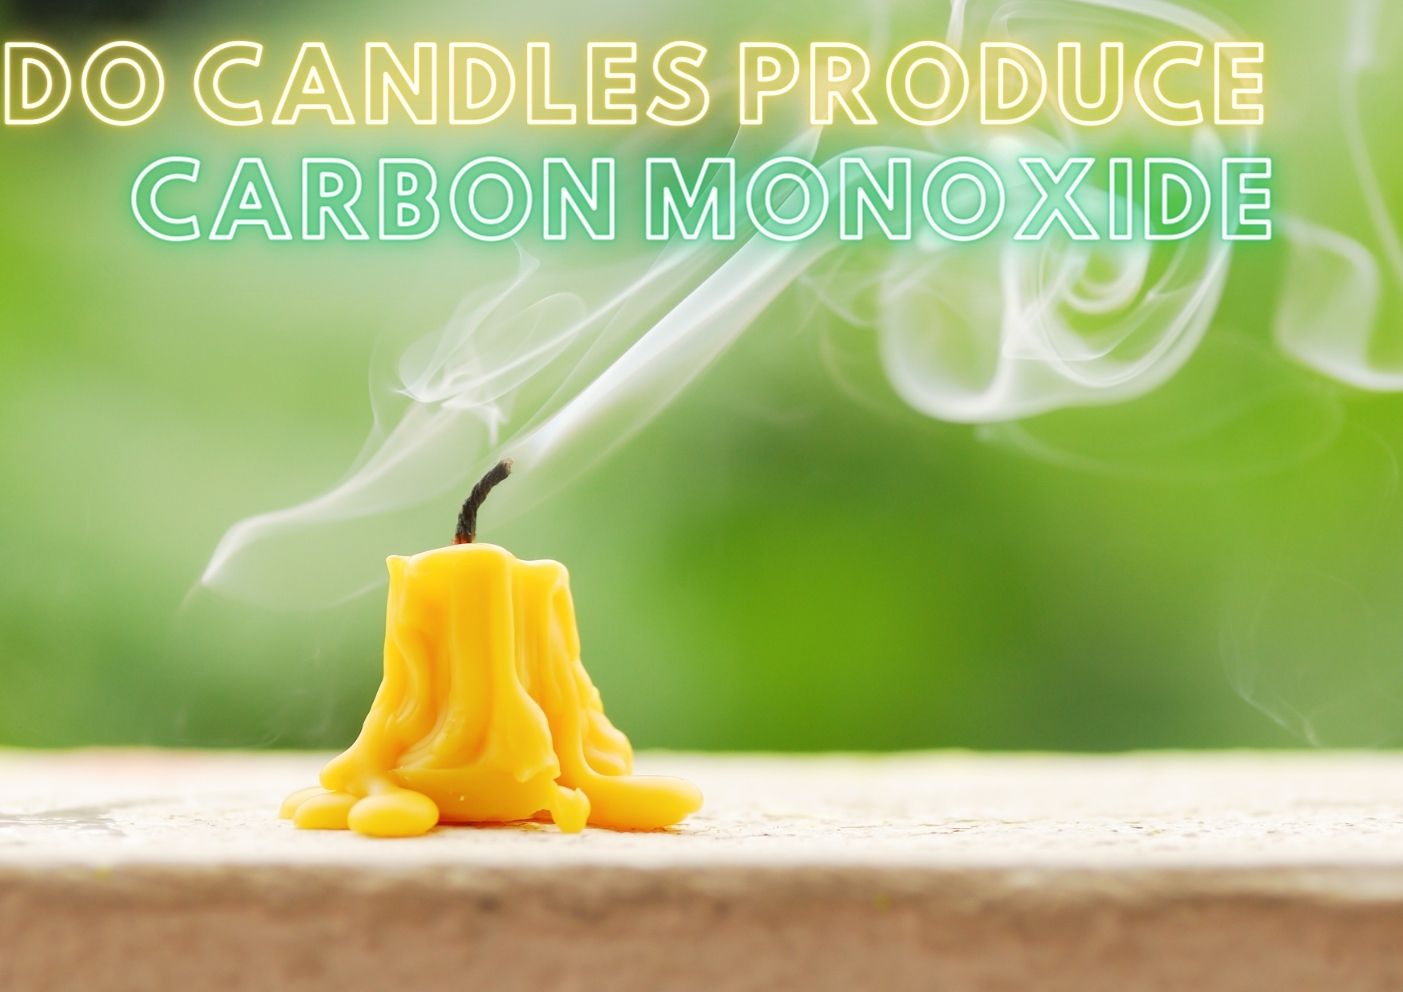 Do candles produce carbon monoxide